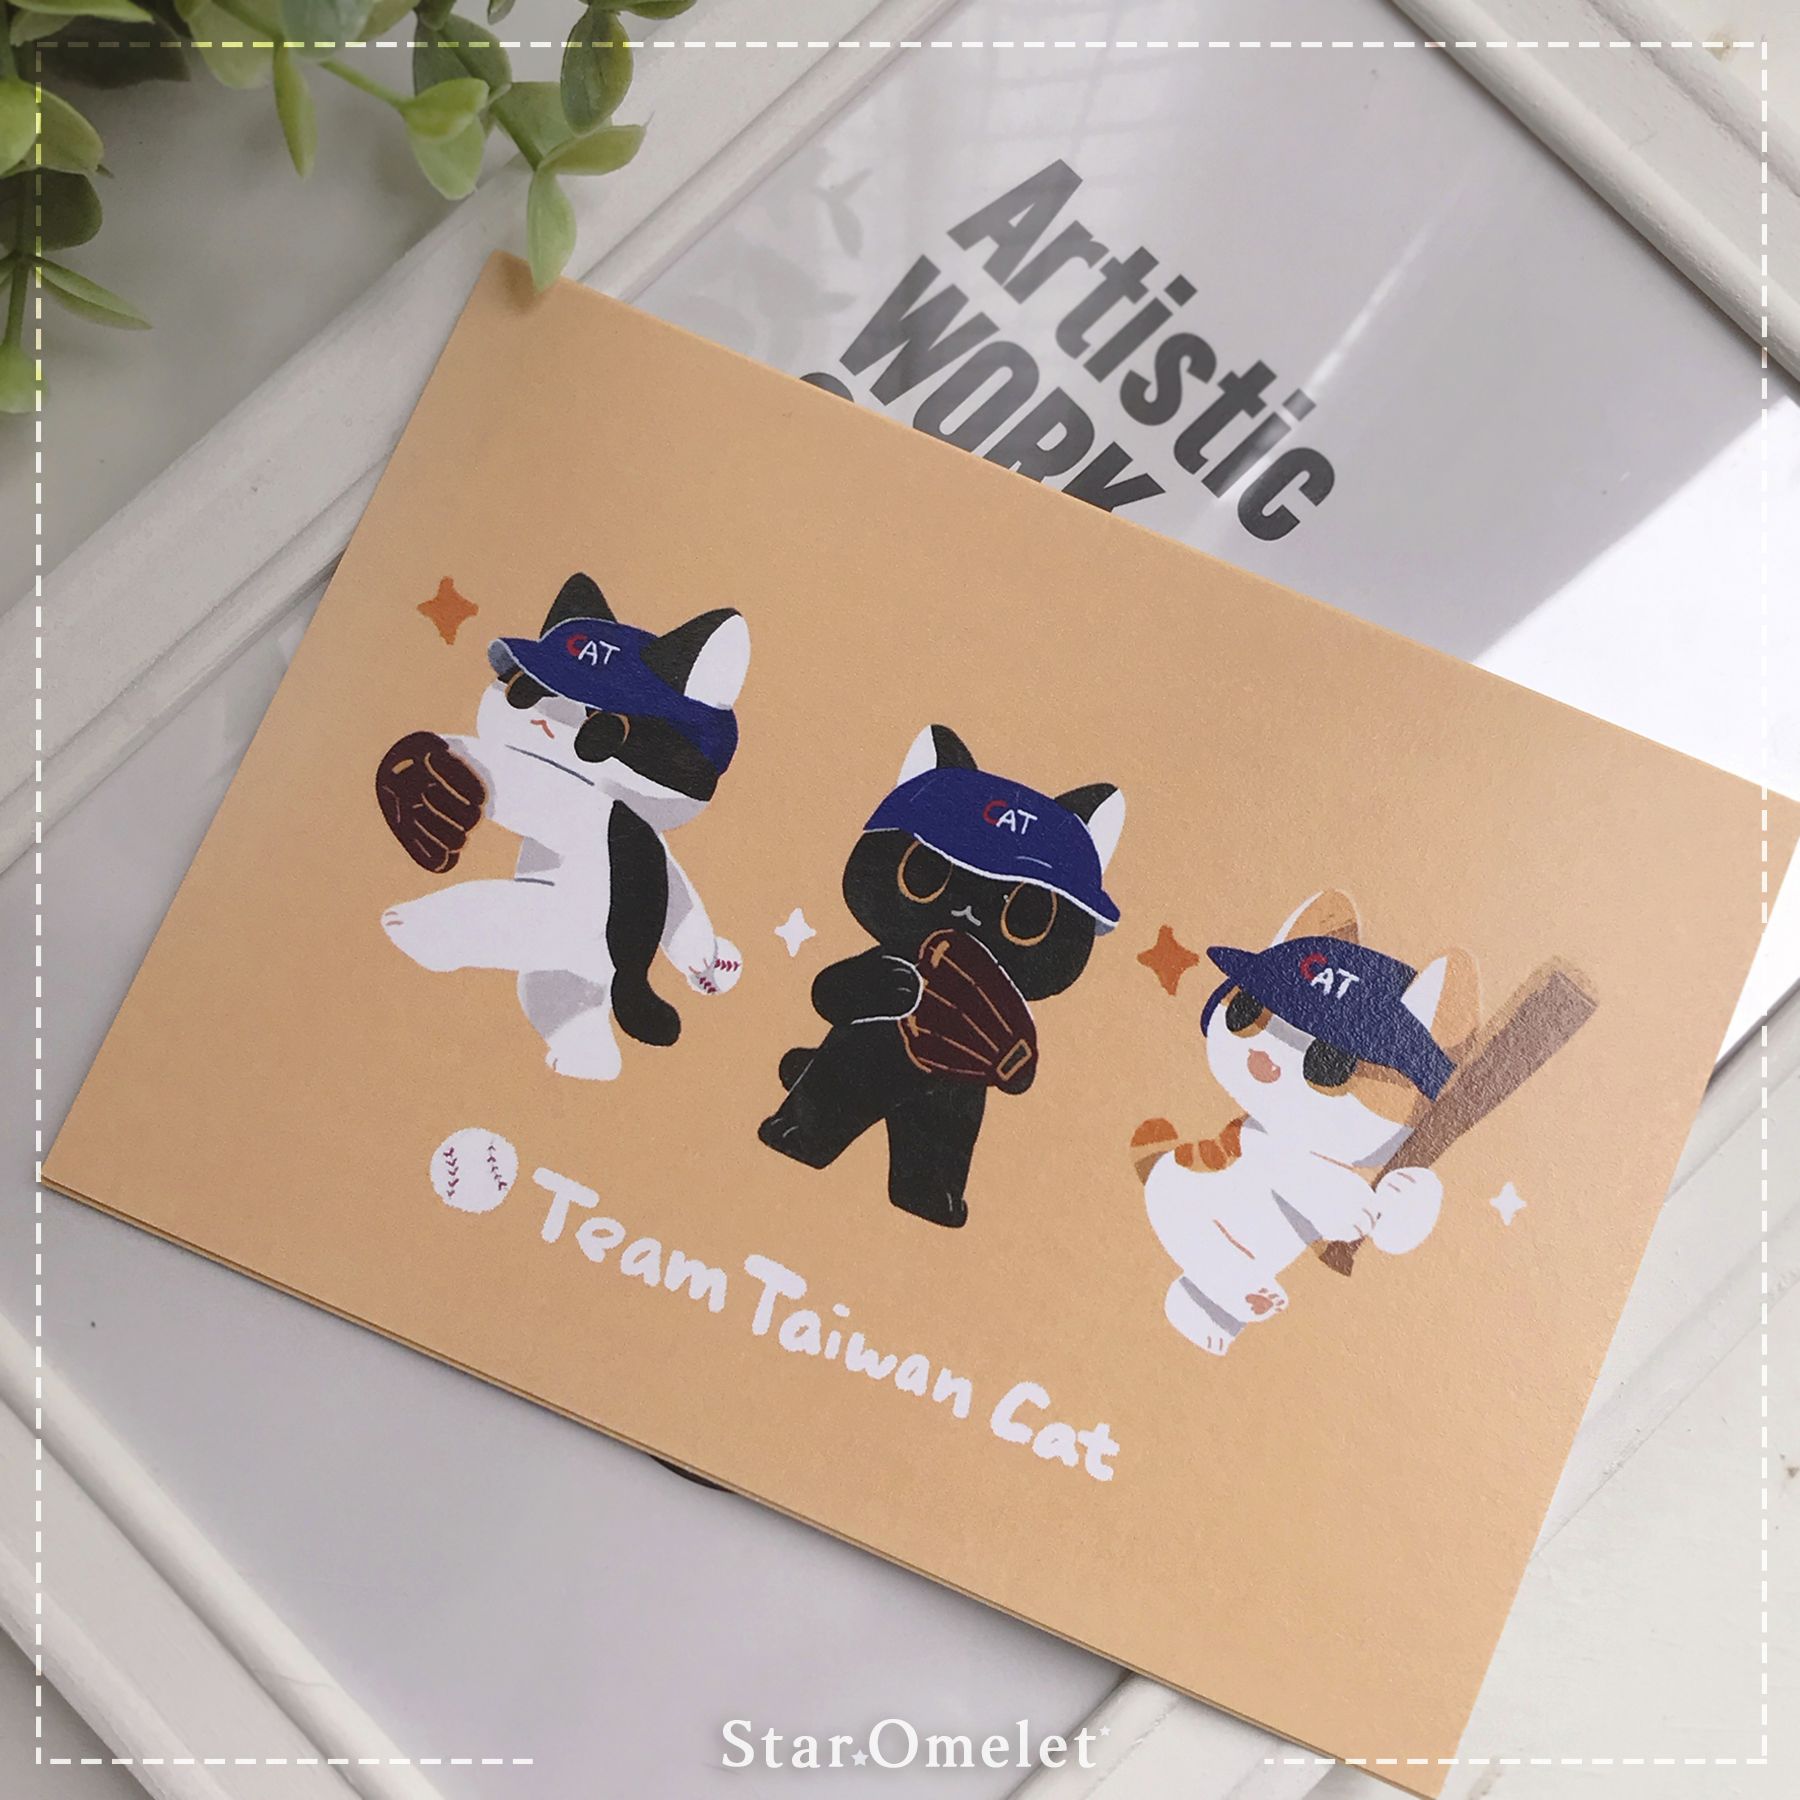 Ryü aka Rio（哩喔）原創 貓貓 櫻桃萊姆果醬系列 棒球 台灣貓隊 酷卡 明信片